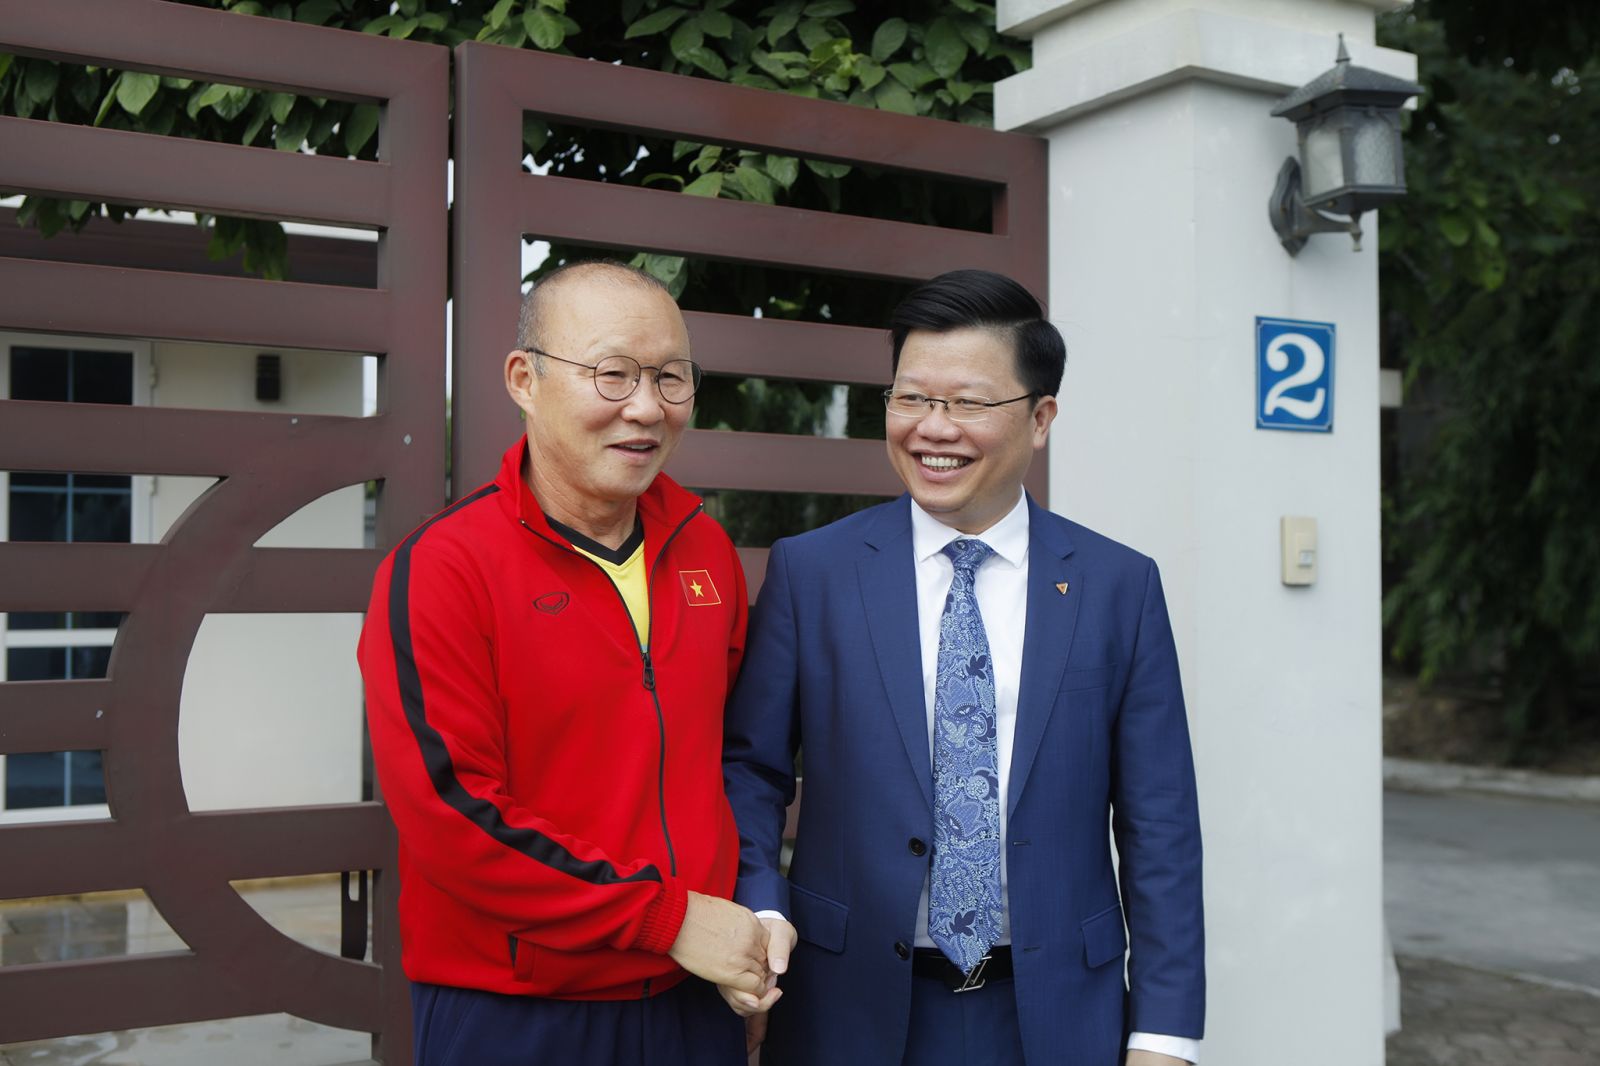 Ngay sau lễ trao thưởng, Tổng giám đốc Nguyễn Hưng đã gặp gỡ chúc mừng và gửi những lời chúc tốt đến thầy trò ông Park Hang-seo trong ngày luyện tập đầu tiên chuẩn bị cho Asian Cup 2019 sắp tới.